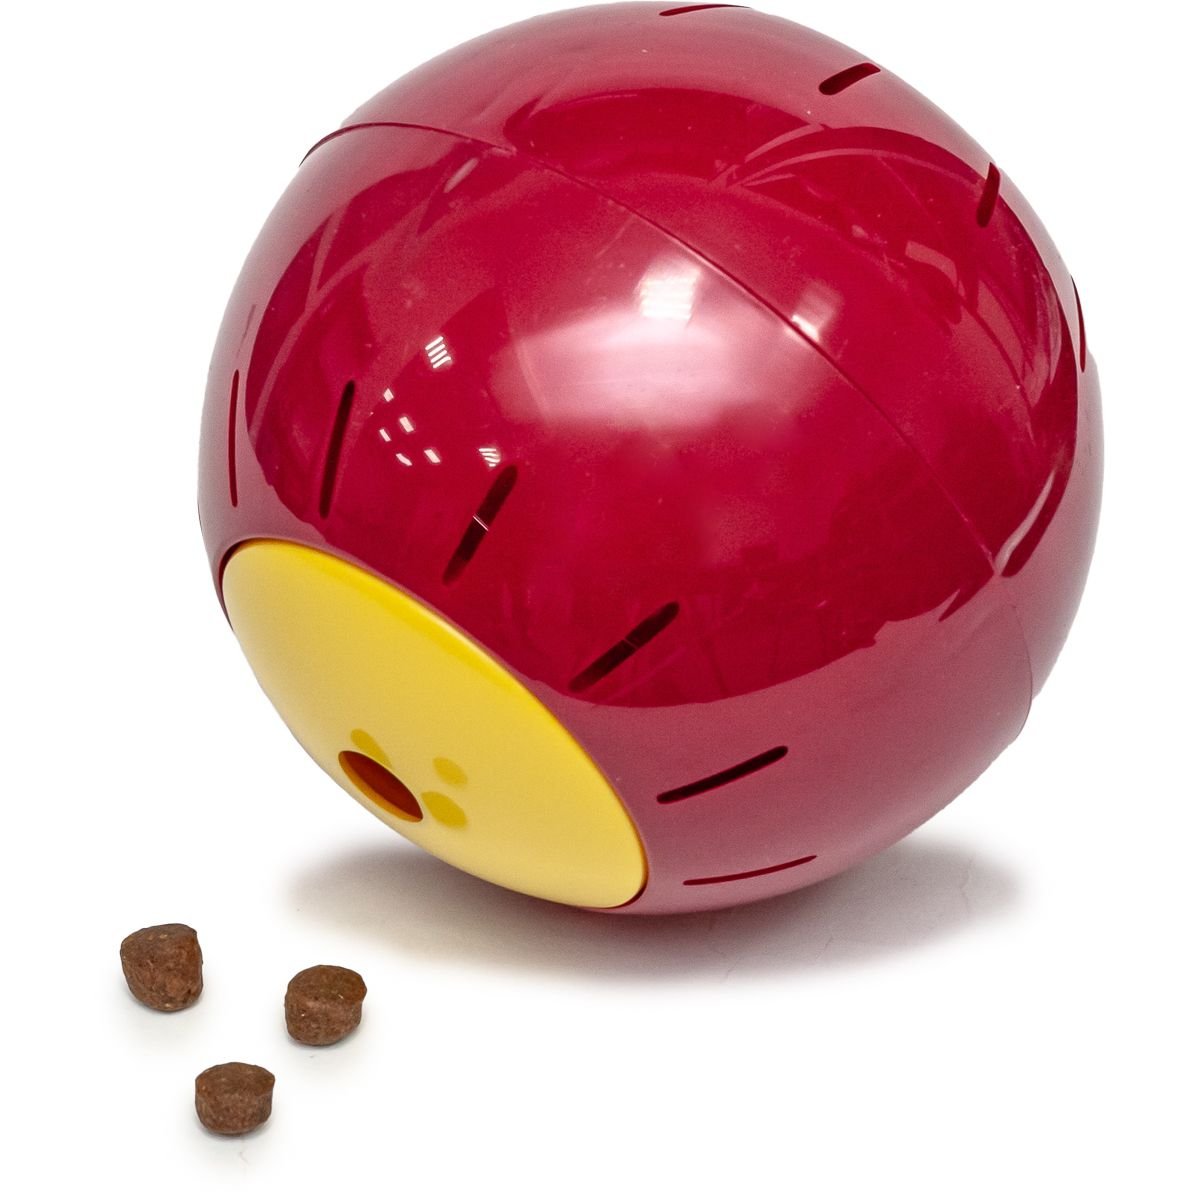 Іграшка для ласощів Georplast Rolling Ball, 12,5 см, в асортименті - фото 2